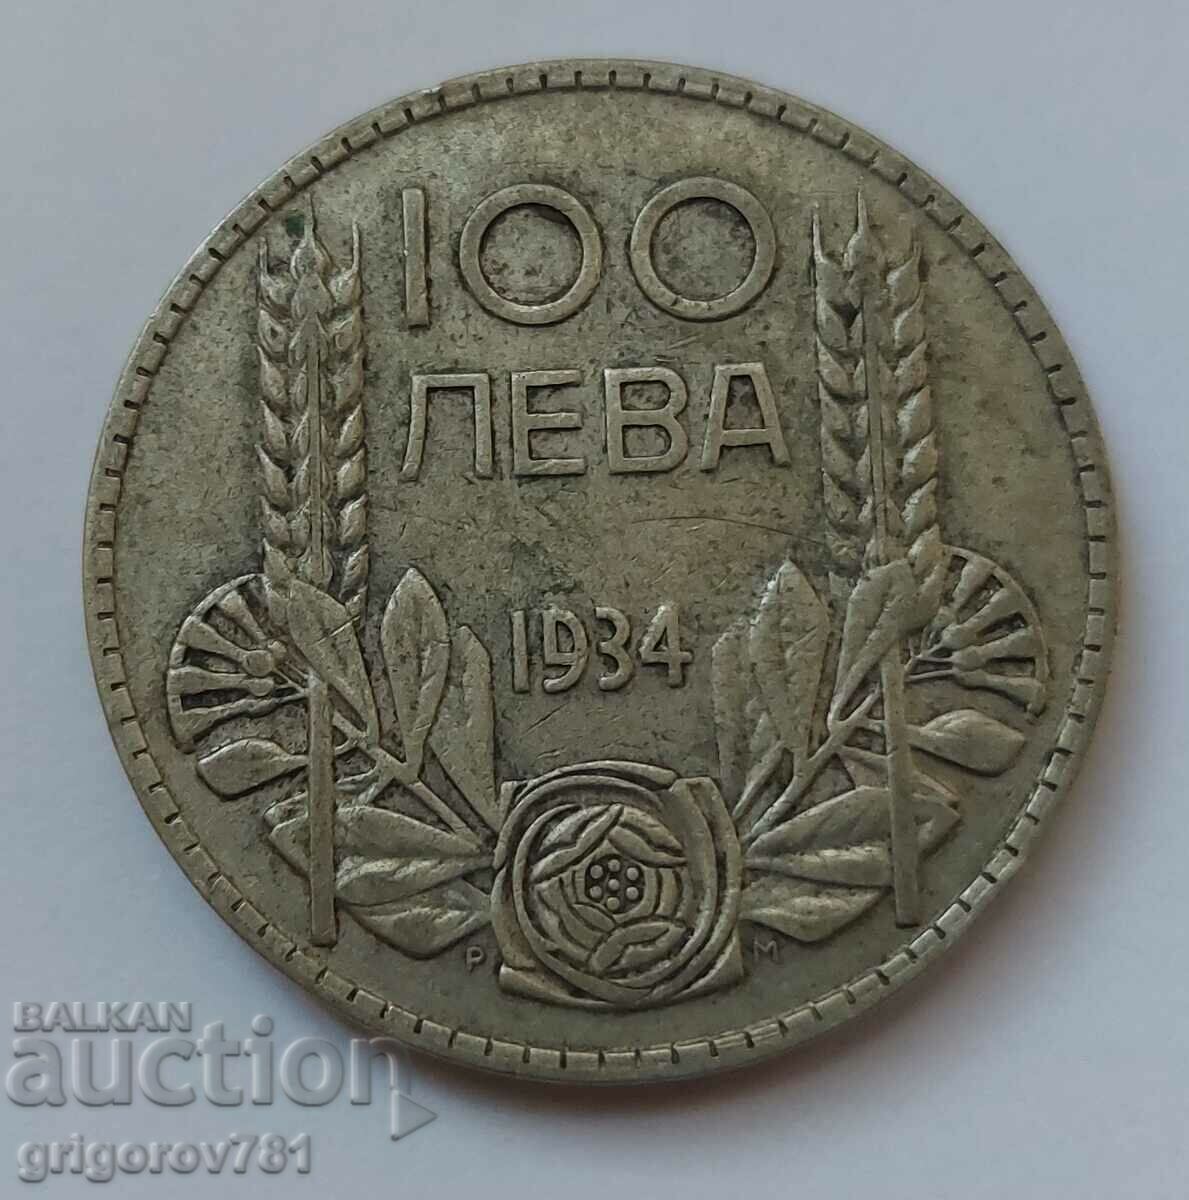 100 leva argint Bulgaria 1934 - monedă de argint #99